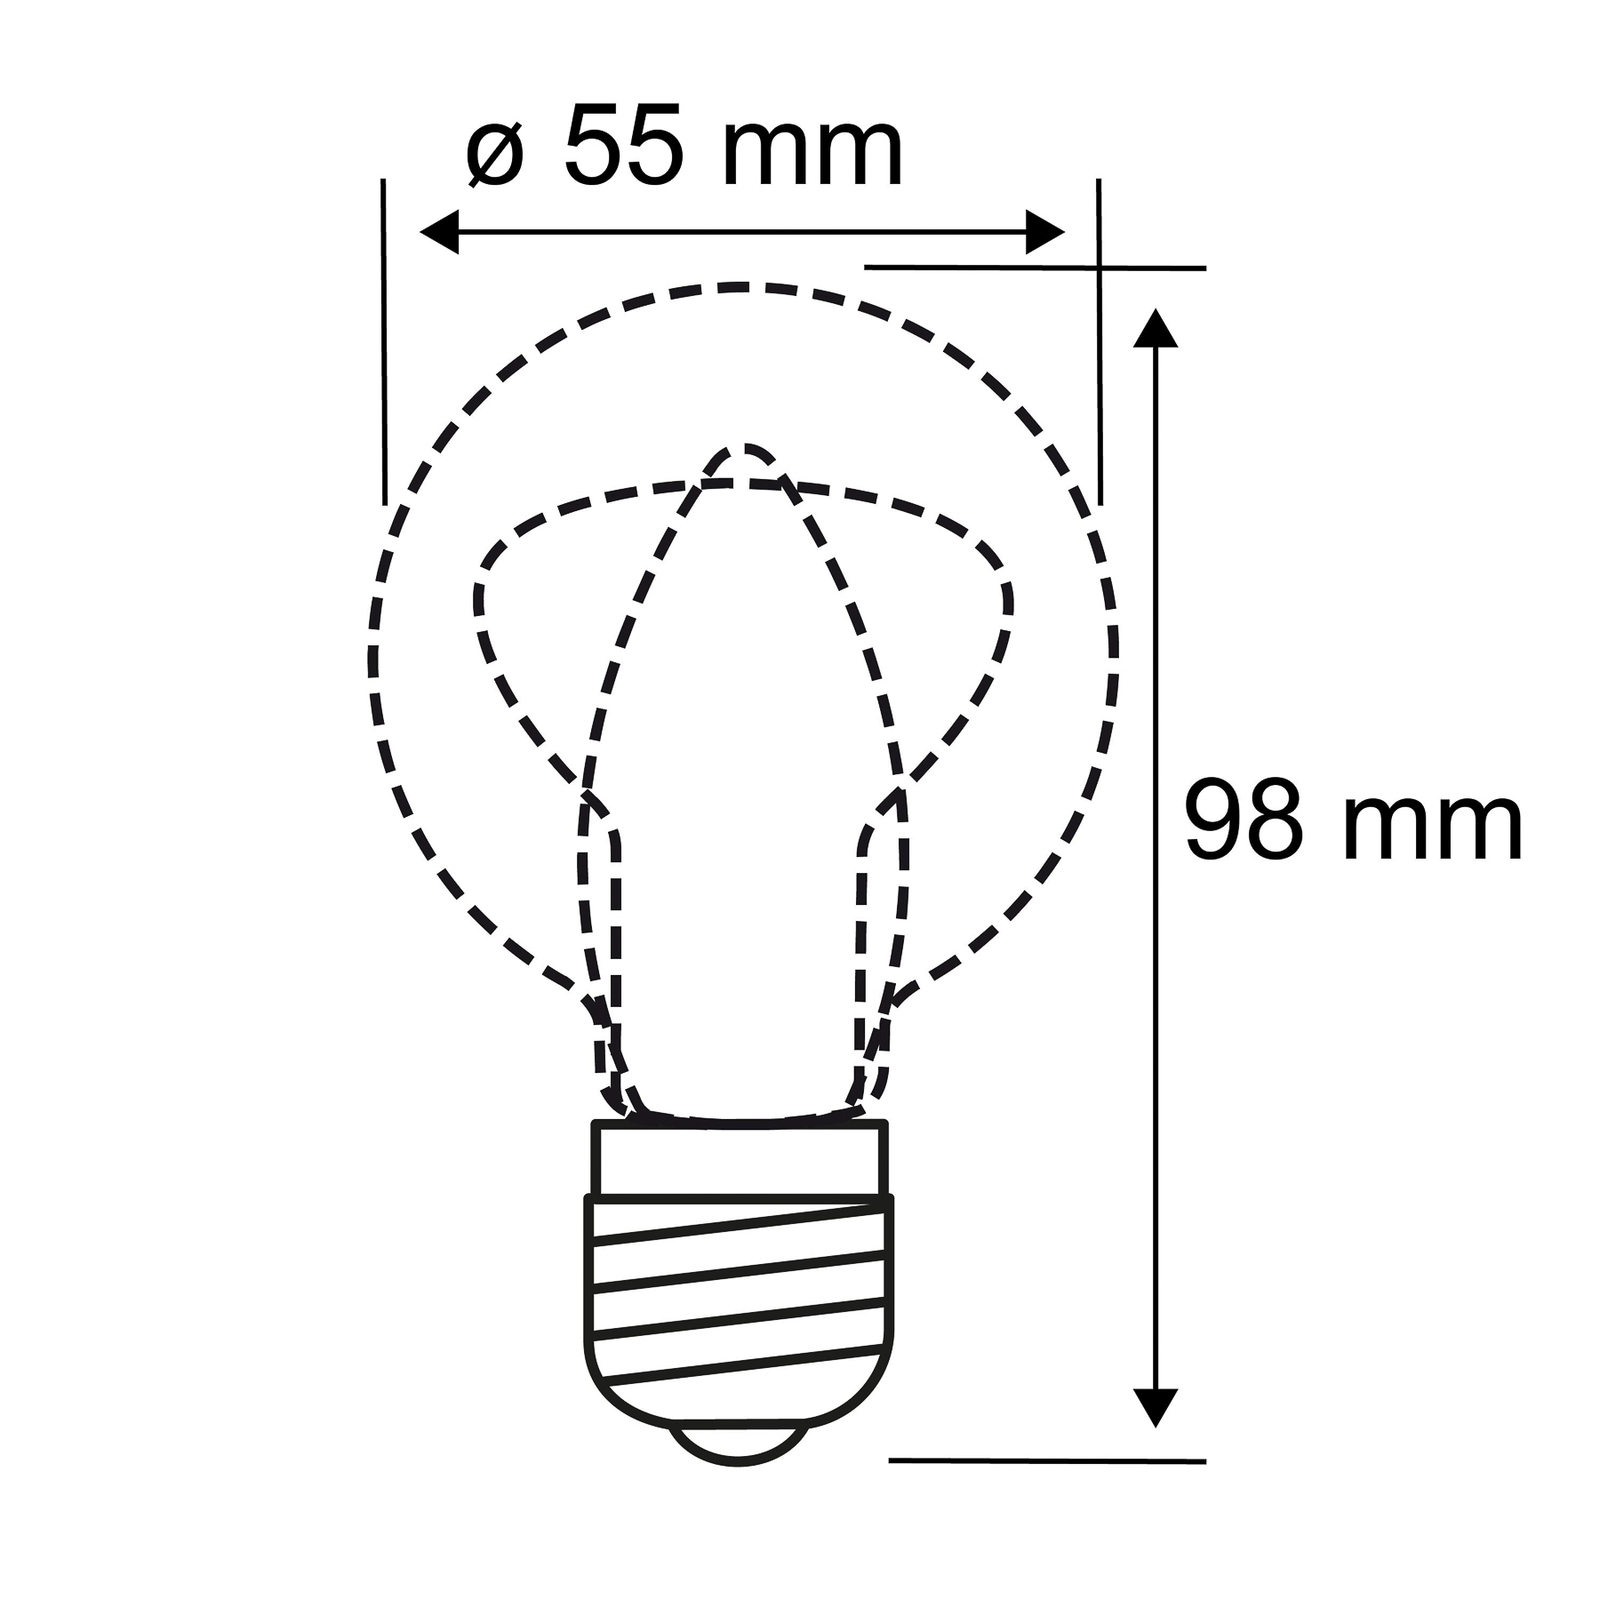 Paulmann filament LED bulb E27 4W 2,200 K